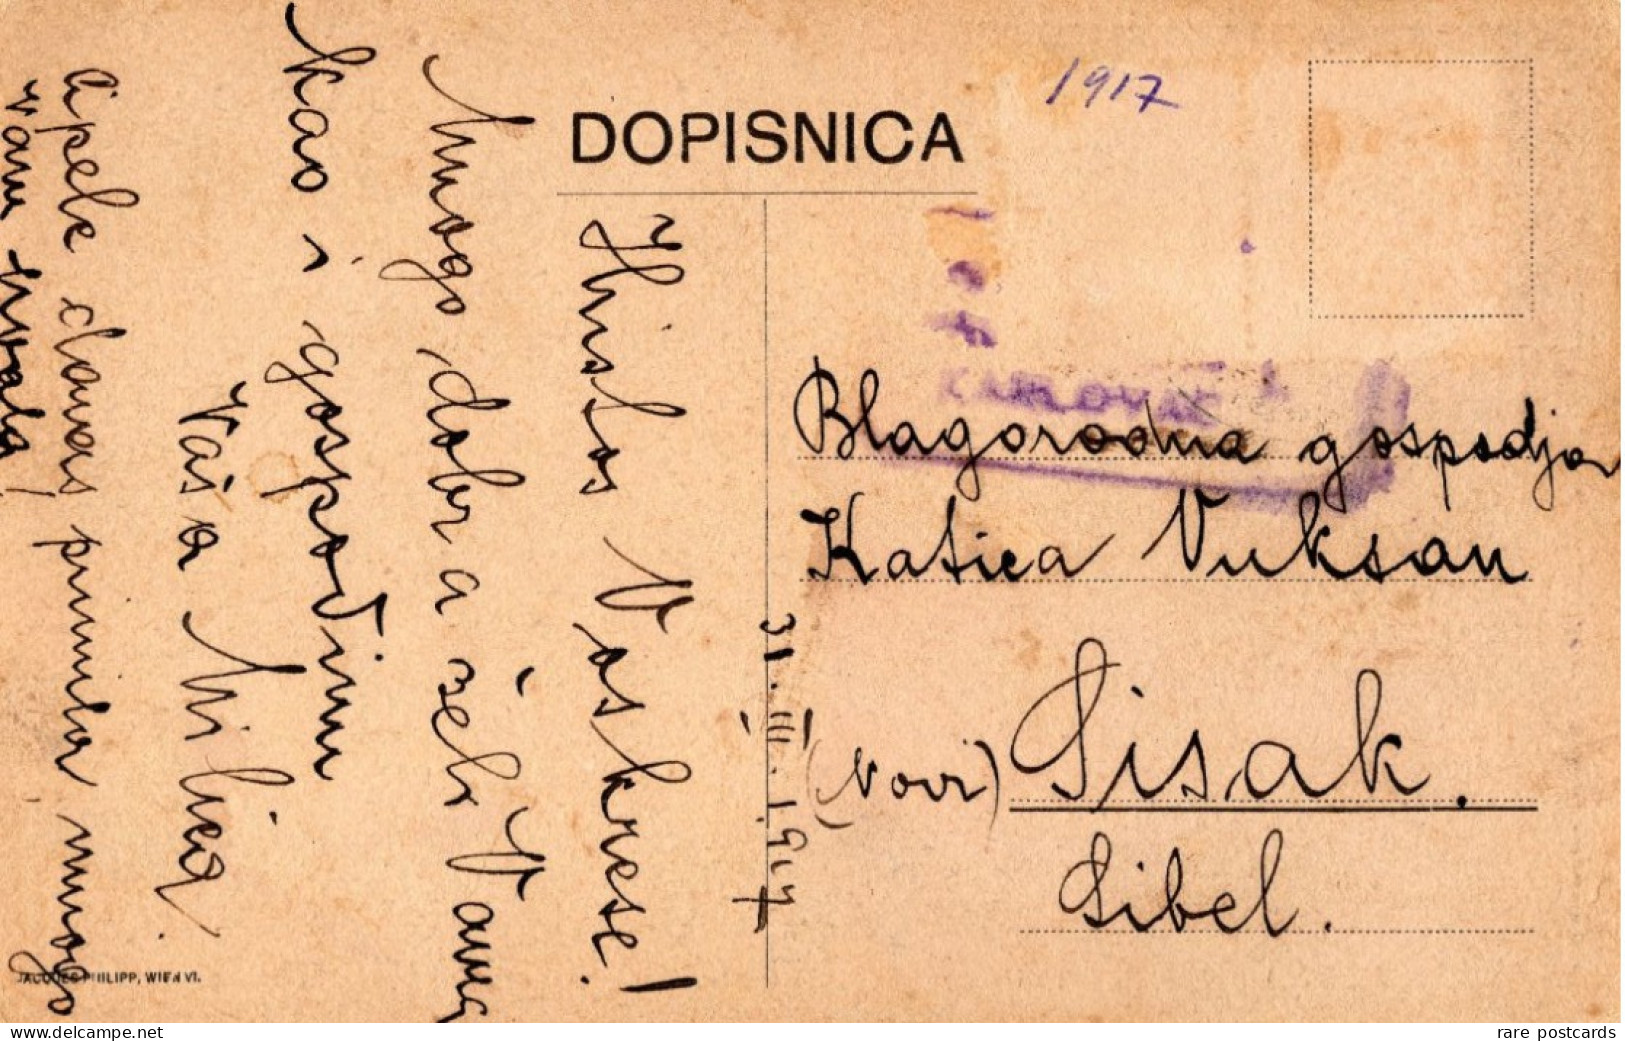 Donji Lapac 1917 - Srpska Pravoslavna Crkva - Croatia